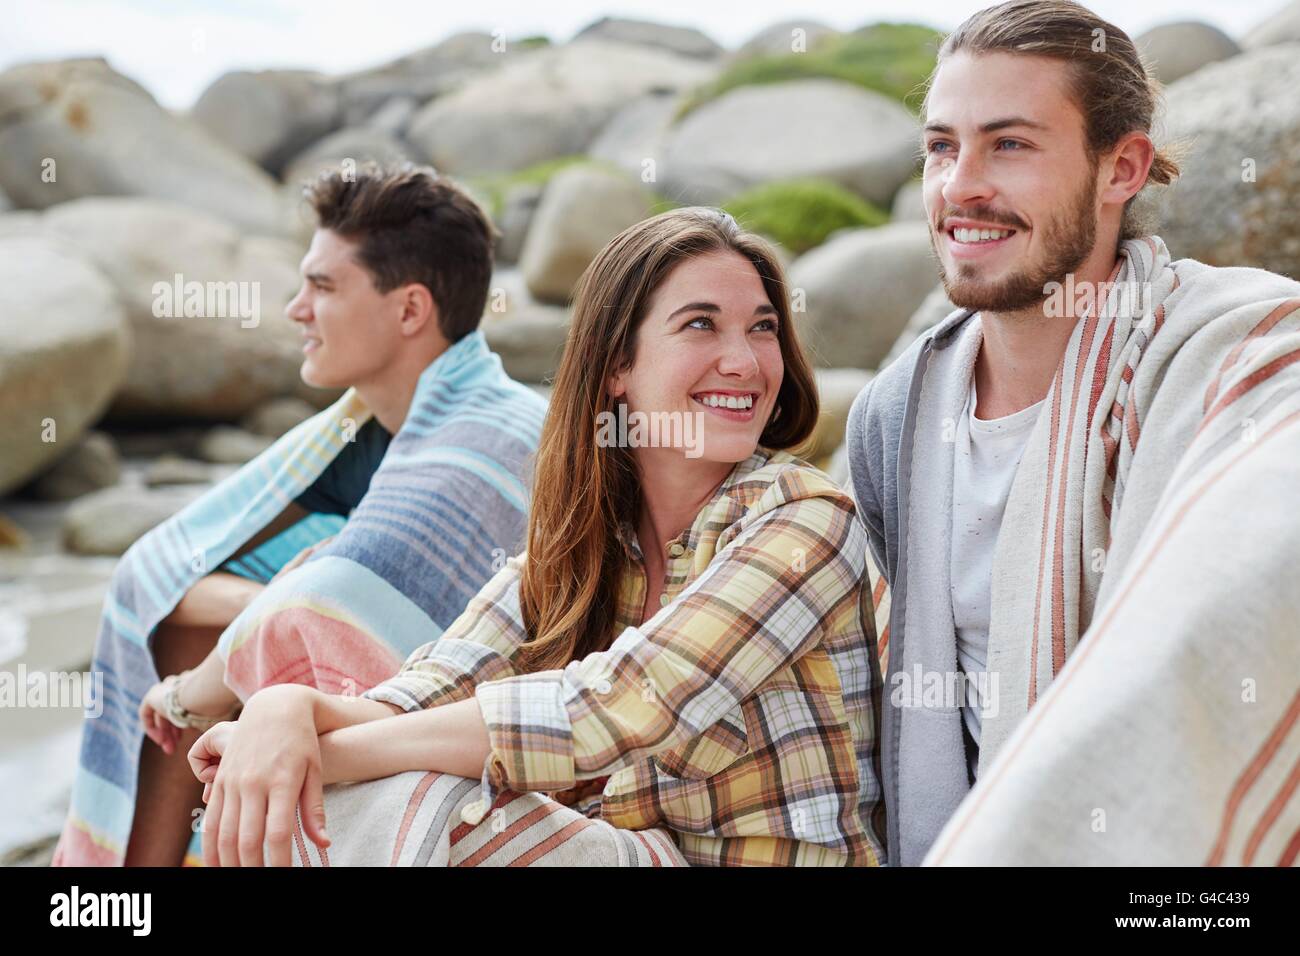 Modello rilasciato. I giovani adulti sulla spiaggia avvolti in coperte. Foto Stock